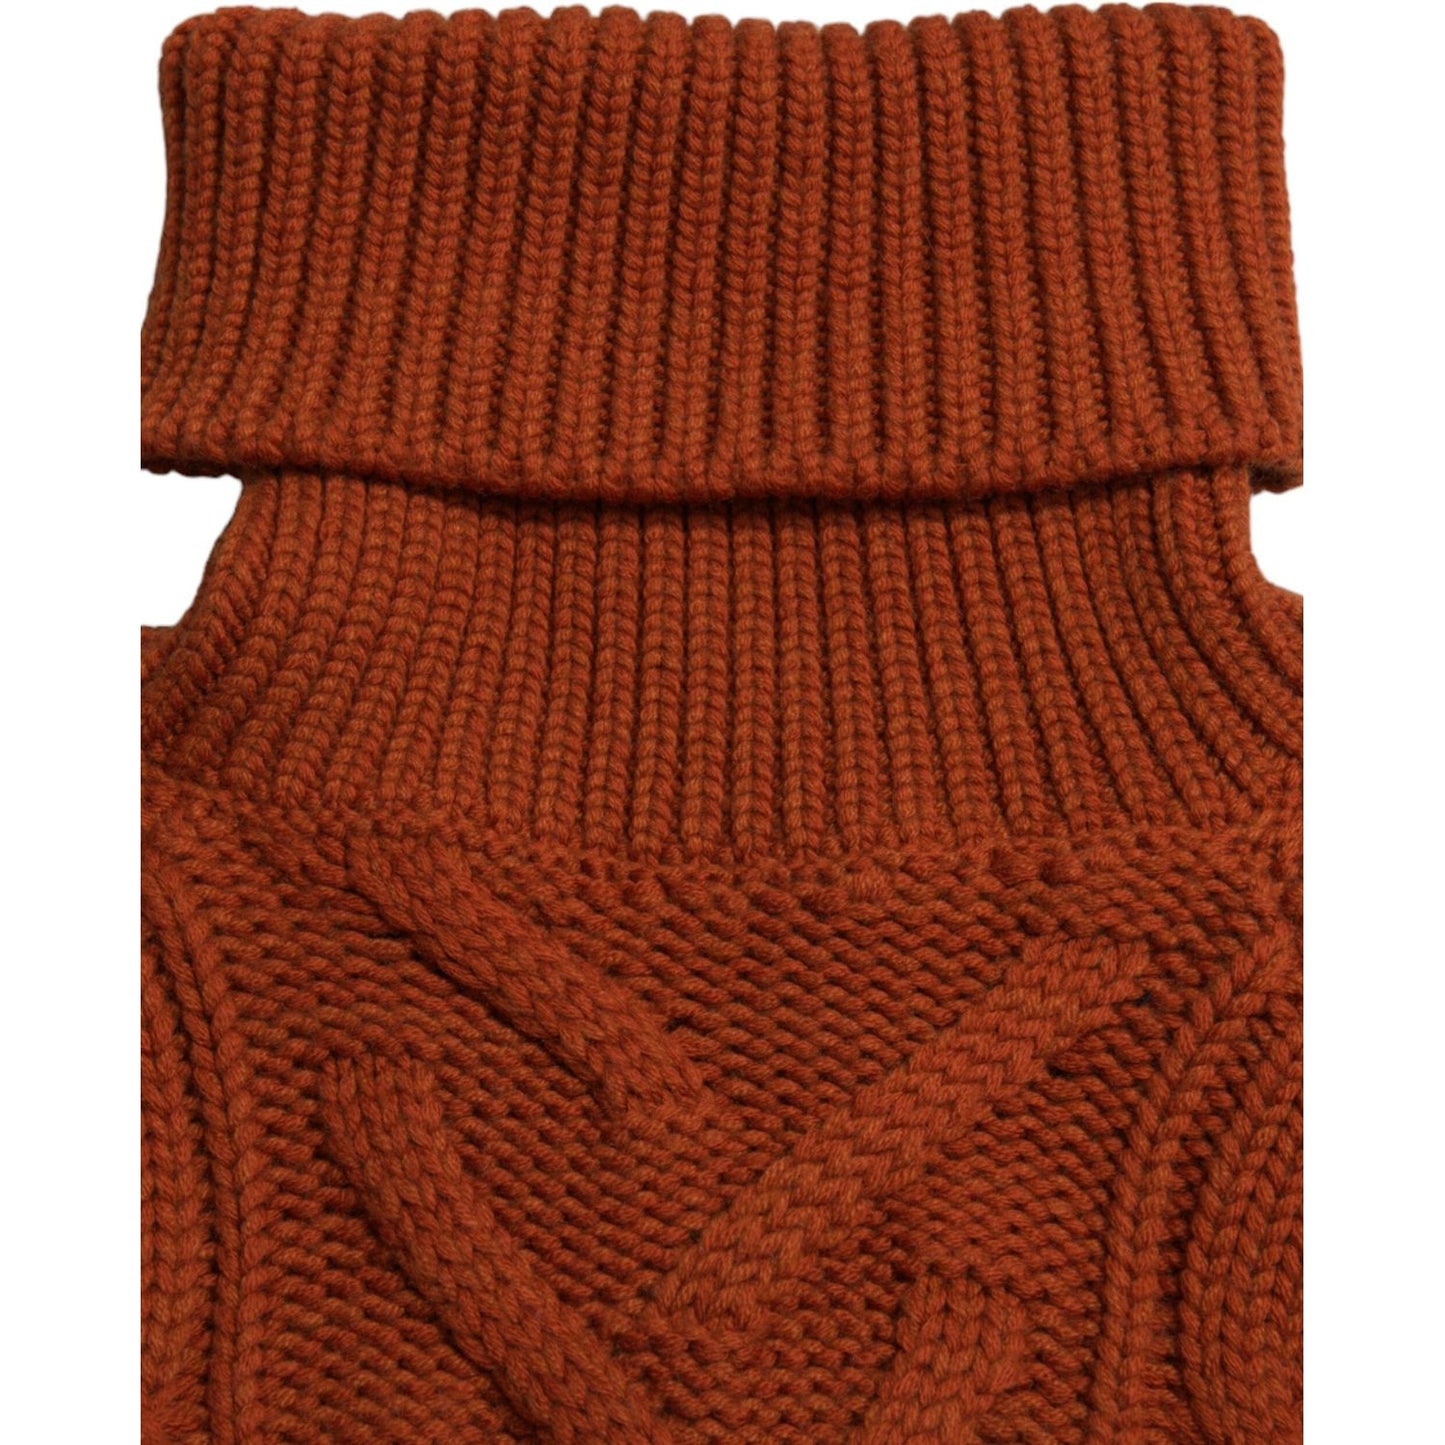 Dolce & Gabbana Elegant Brown Turtleneck Wool Sweater brown-wool-knit-turtleneck-pullover-sweater-1